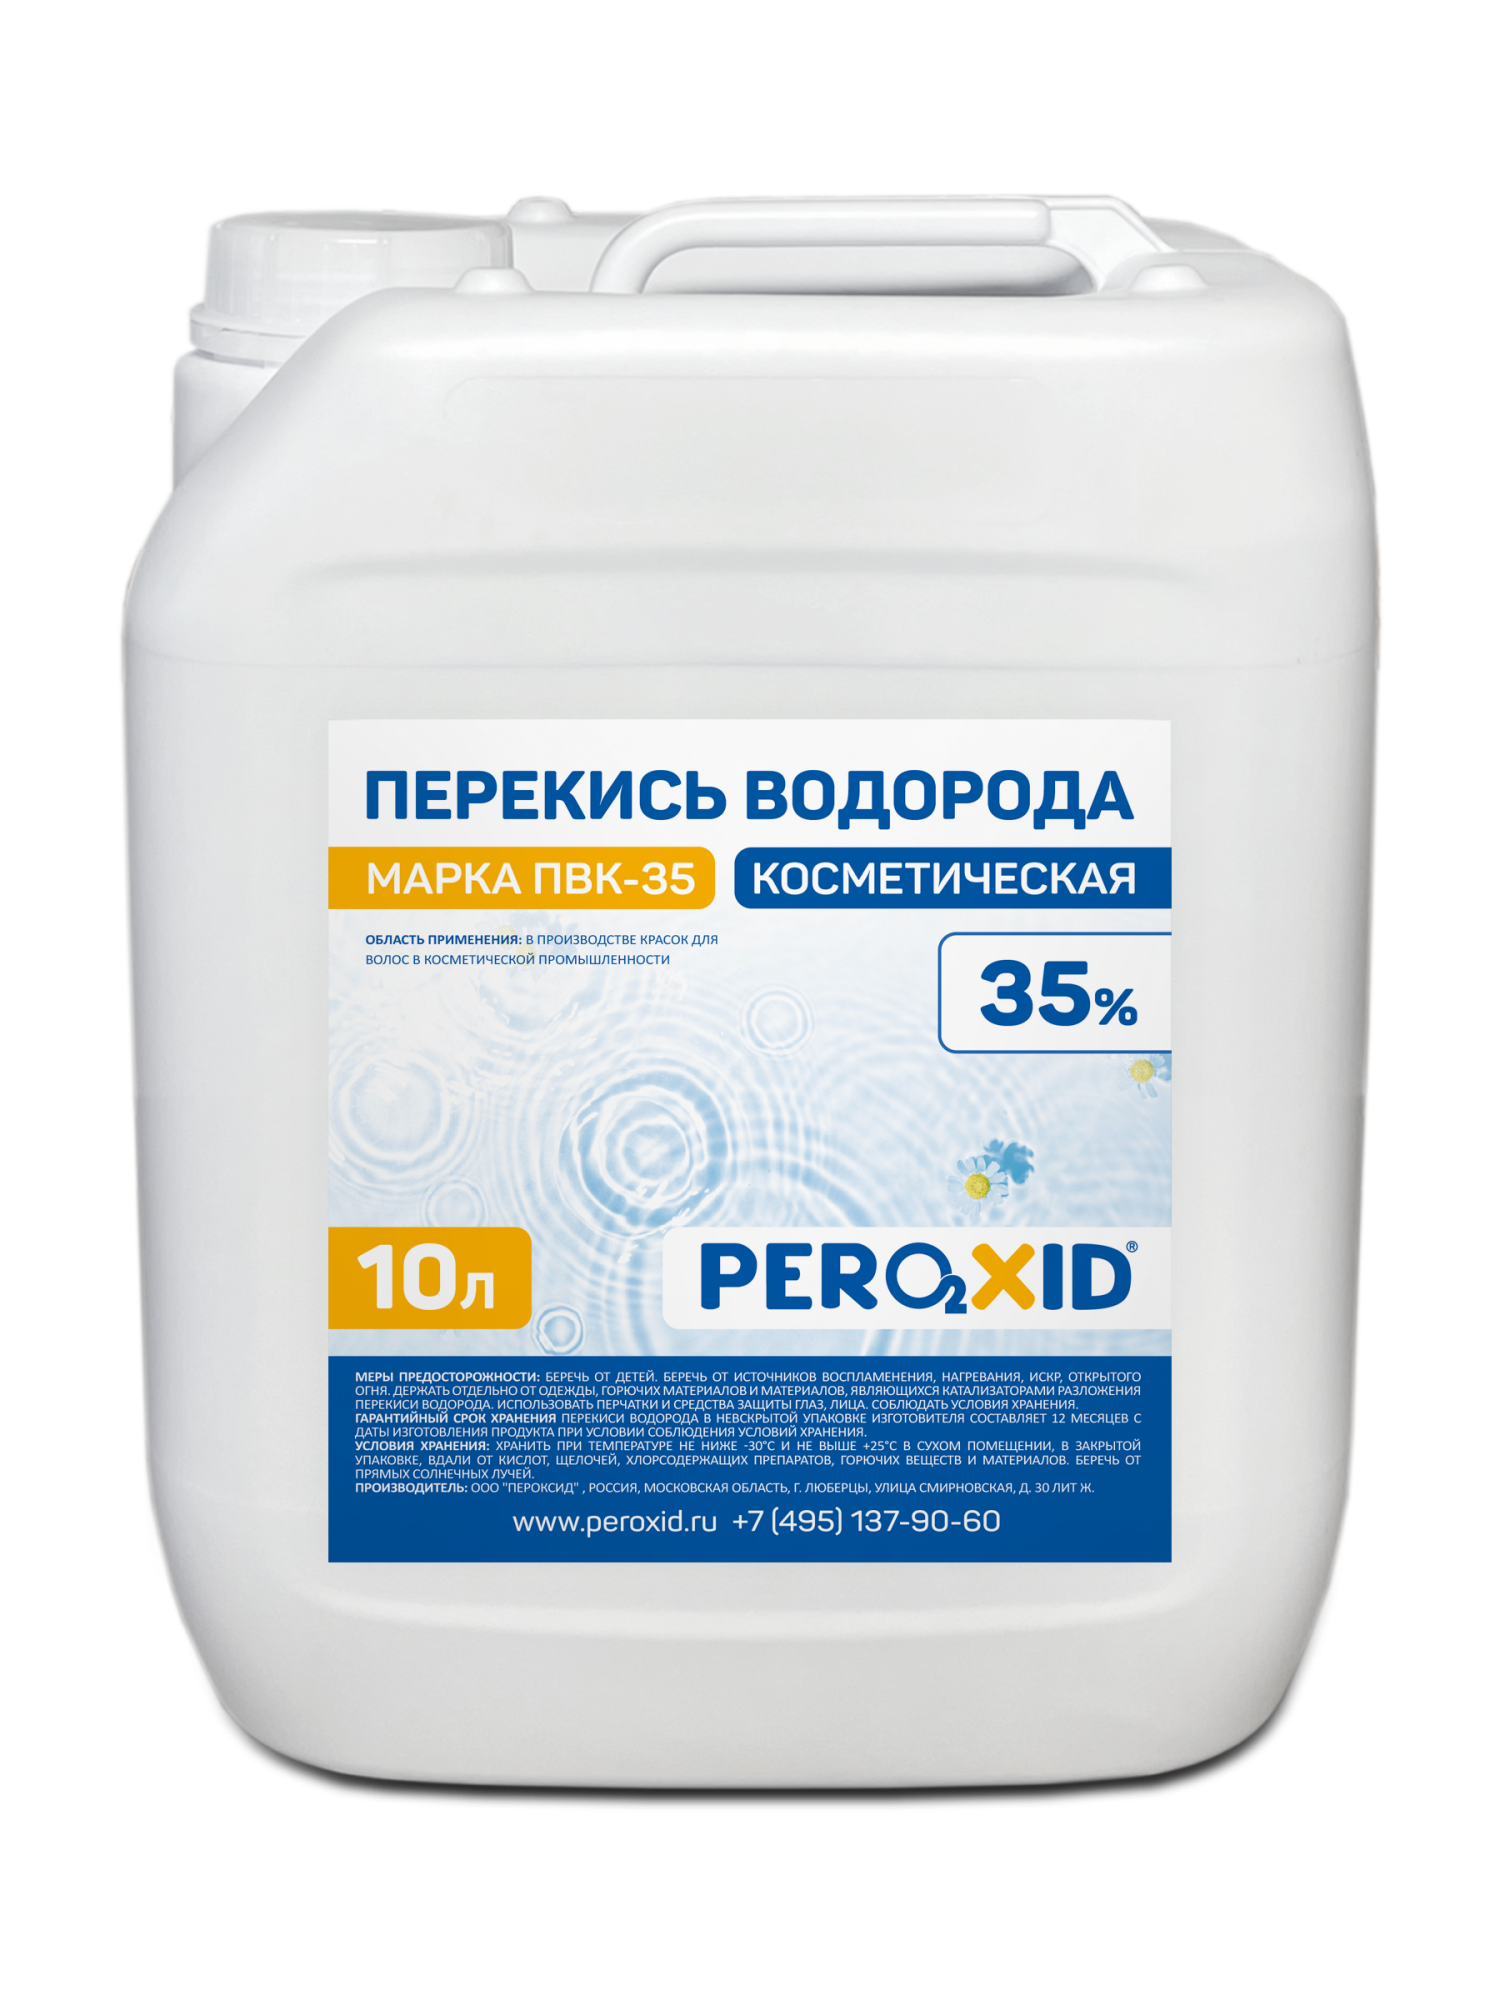 Перекись водорода косметическая PEROXID 35% марка ПВК - 35 ТУ 2123-005-25665344-2009 10 л/12 кг